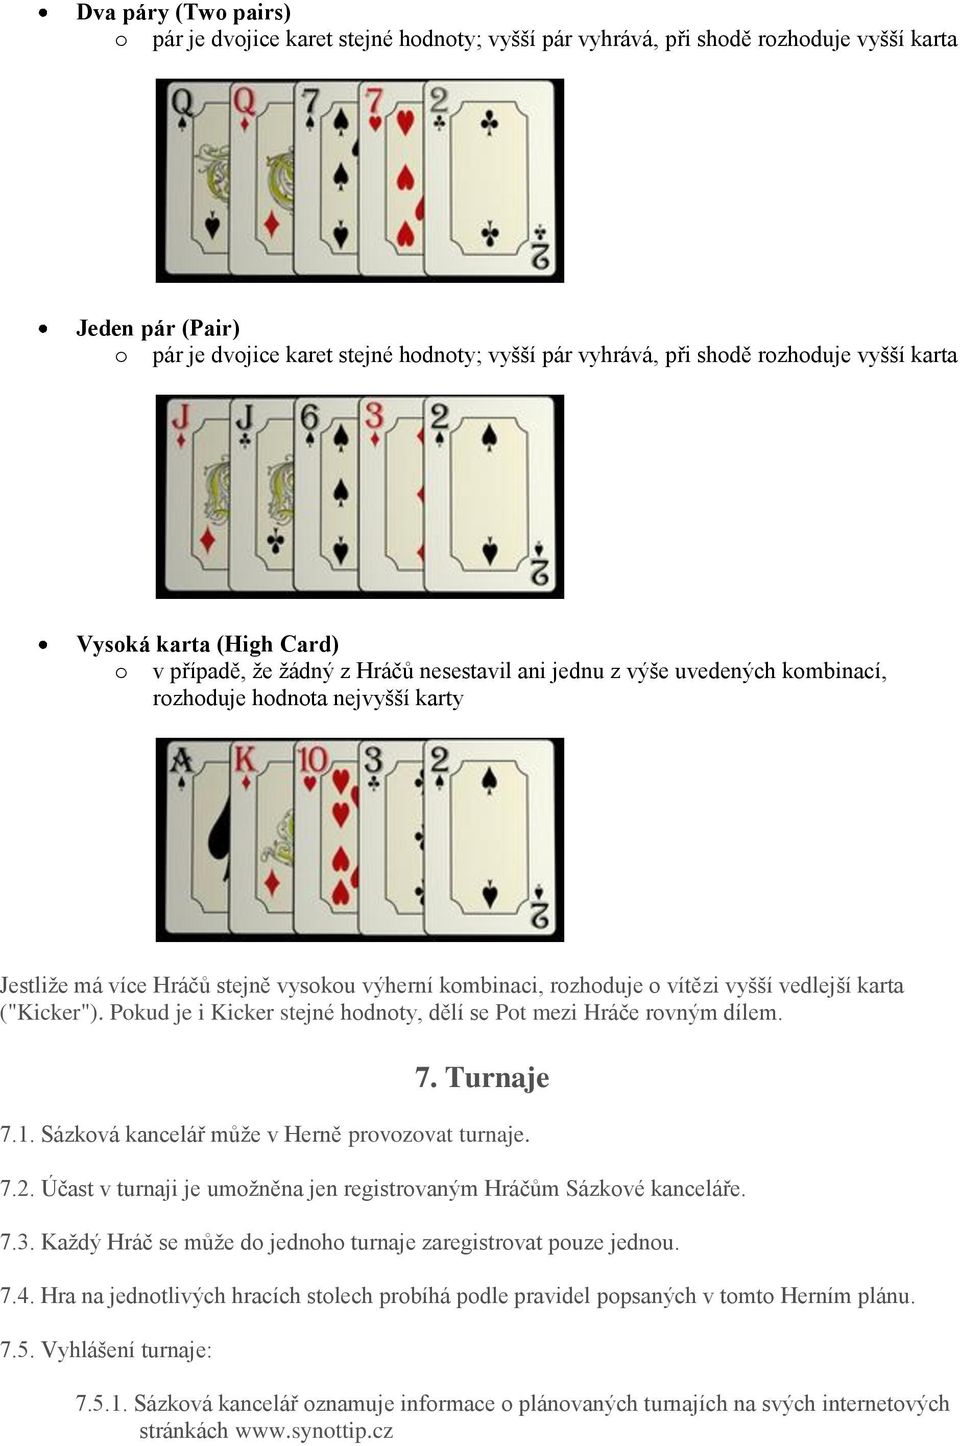 výherní kombinaci, rozhoduje o vítězi vyšší vedlejší karta ("Kicker"). Pokud je i Kicker stejné hodnoty, dělí se Pot mezi Hráče rovným dílem. 7. Turnaje 7.1.